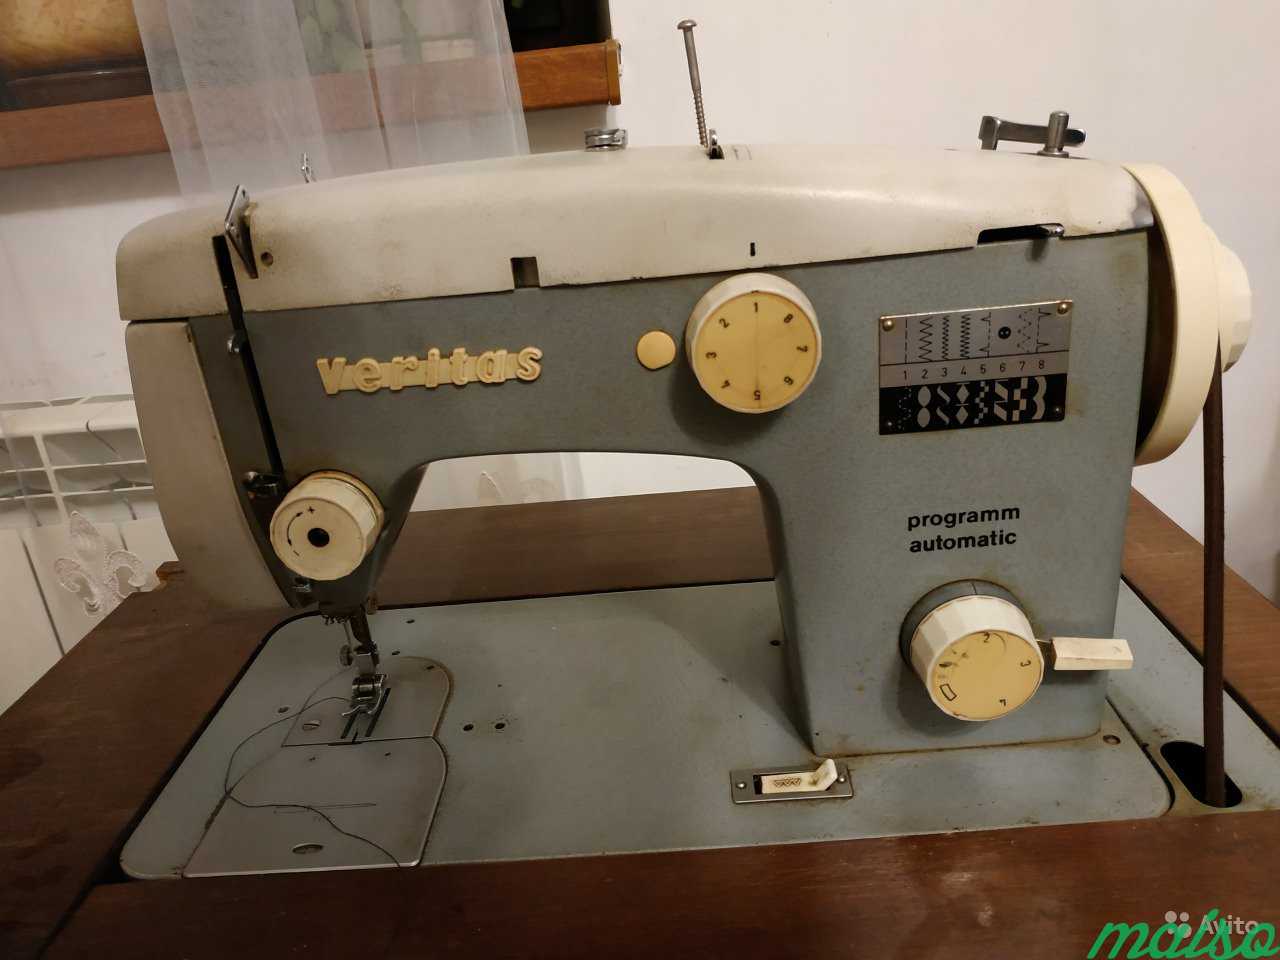 Швейная машина Веритас автоматик